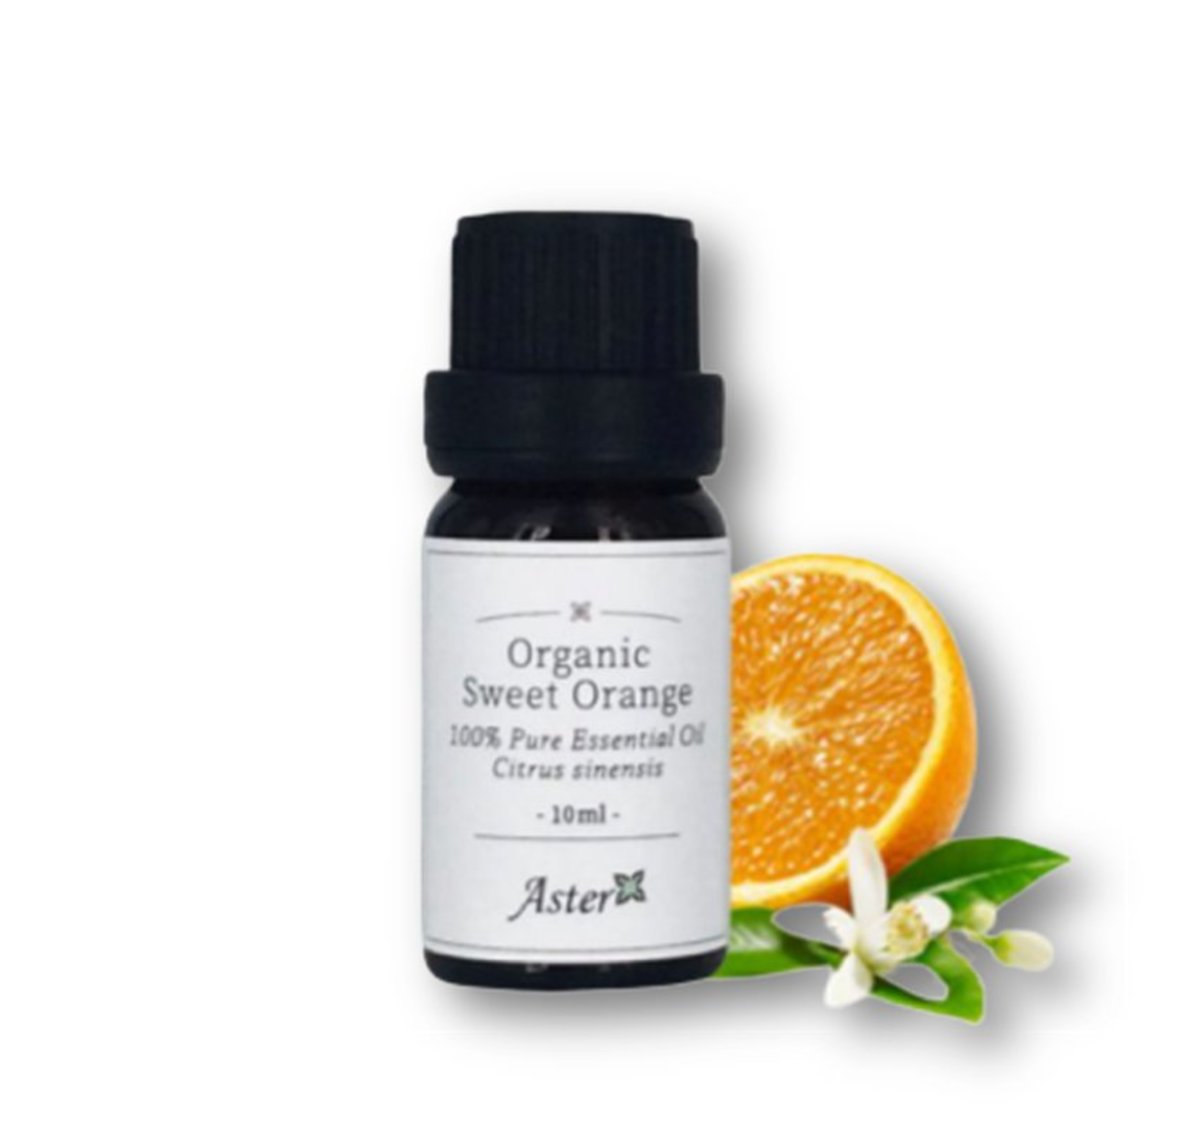 有機甜橙香薰精油 (Citrus sinensis) - 10ml